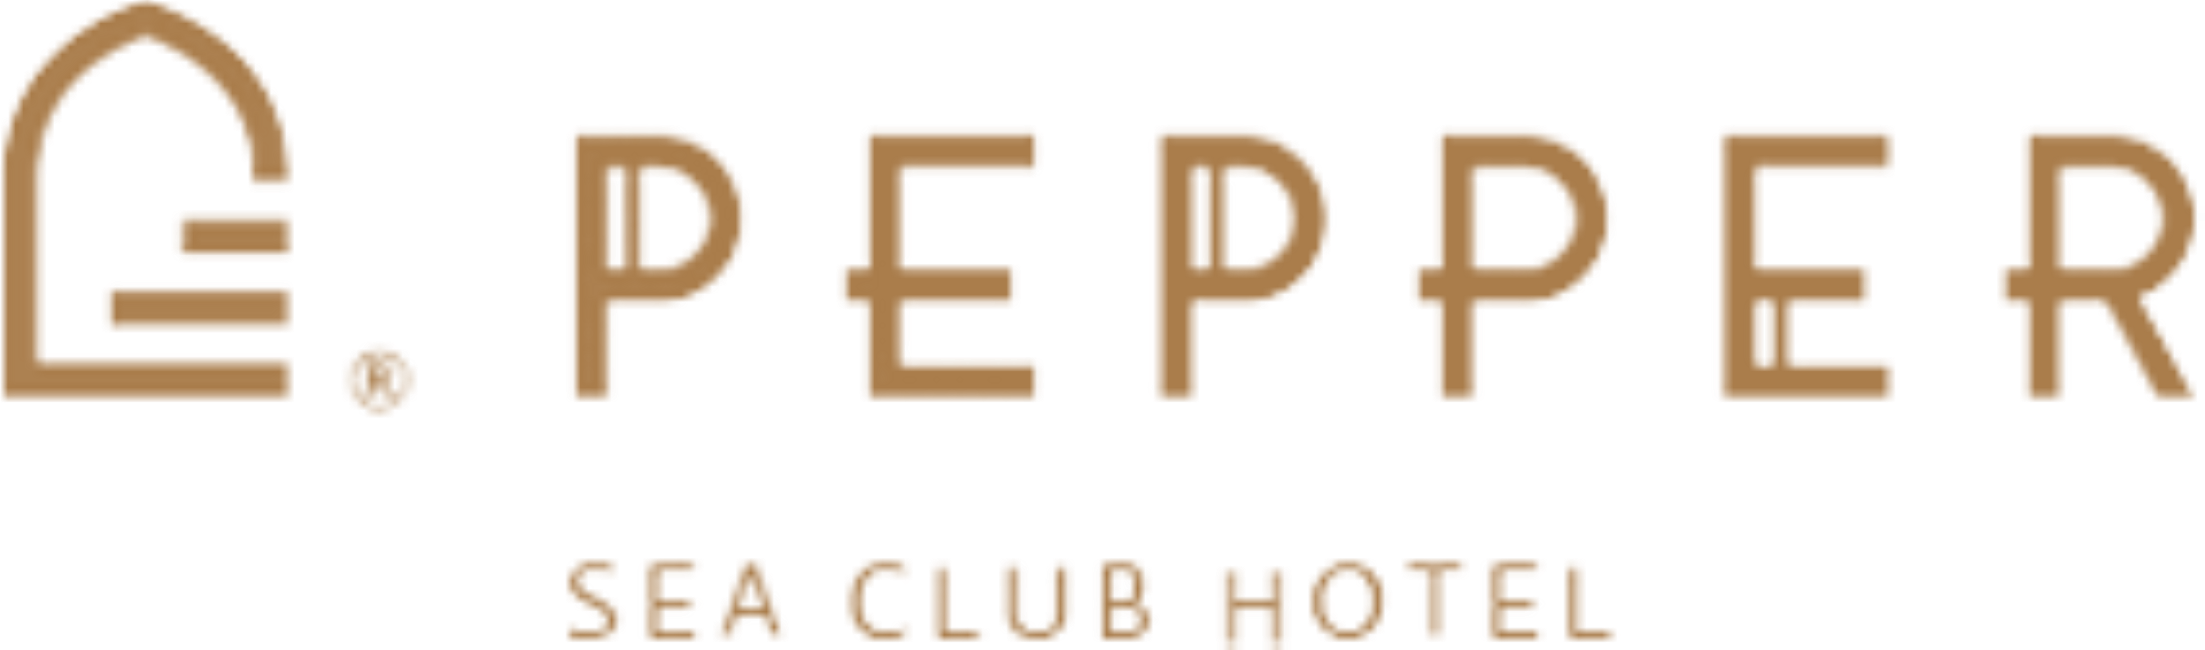 Pepper Sea Club Hotel